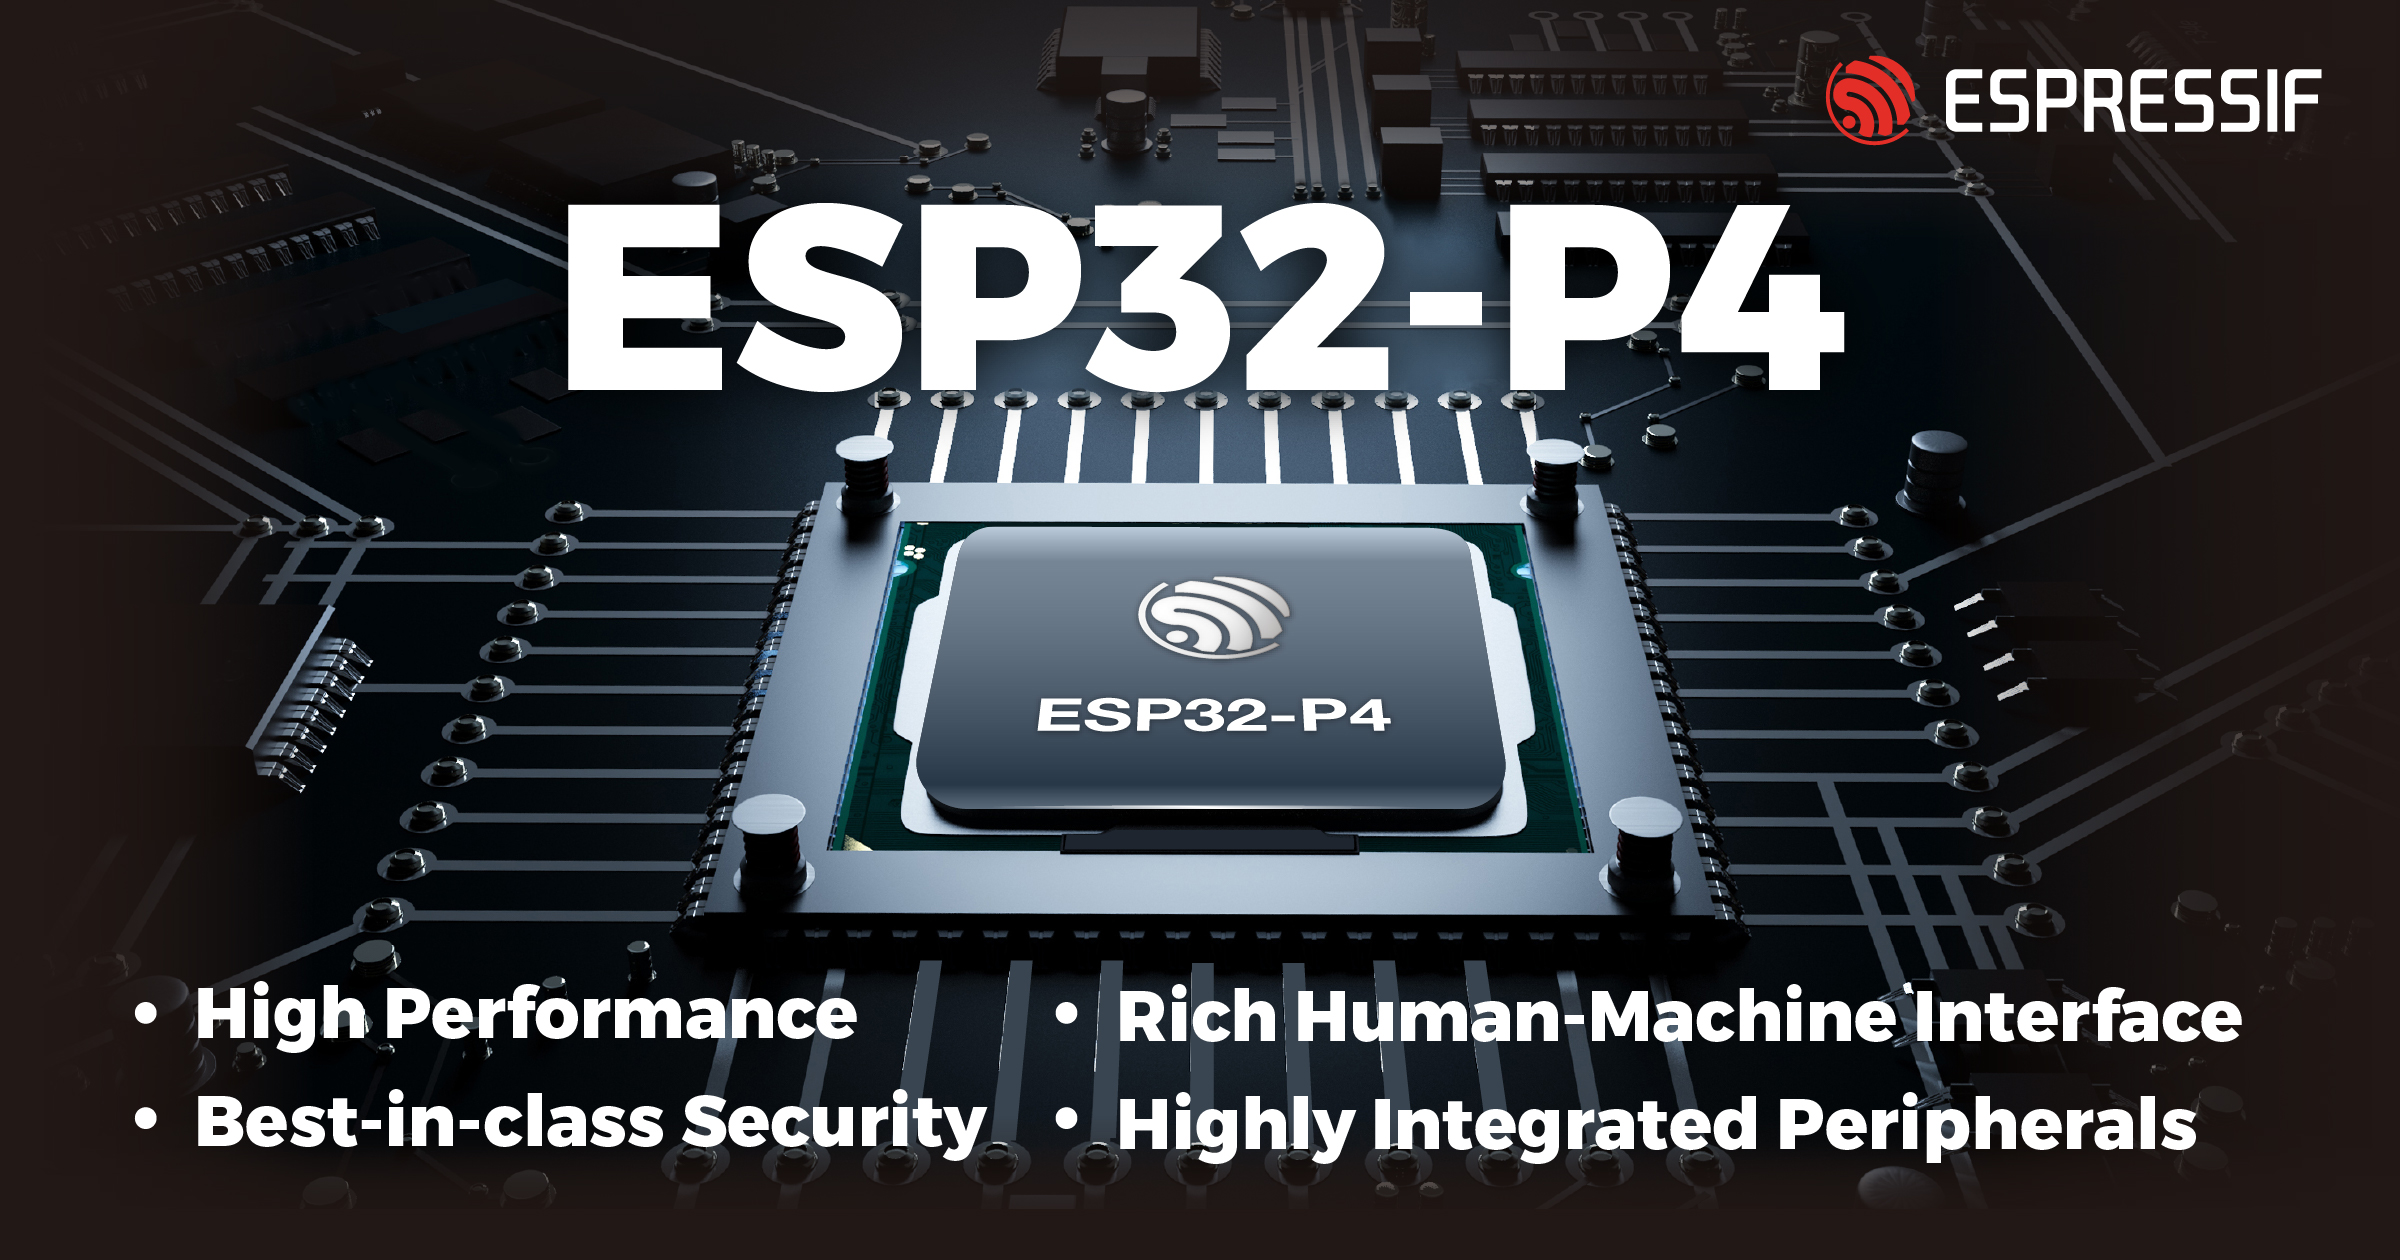 Espressif анонсирует ESP32-P4: высокопроизводительный RISC-V микроконтроллер с различными коммуникационными возможностями